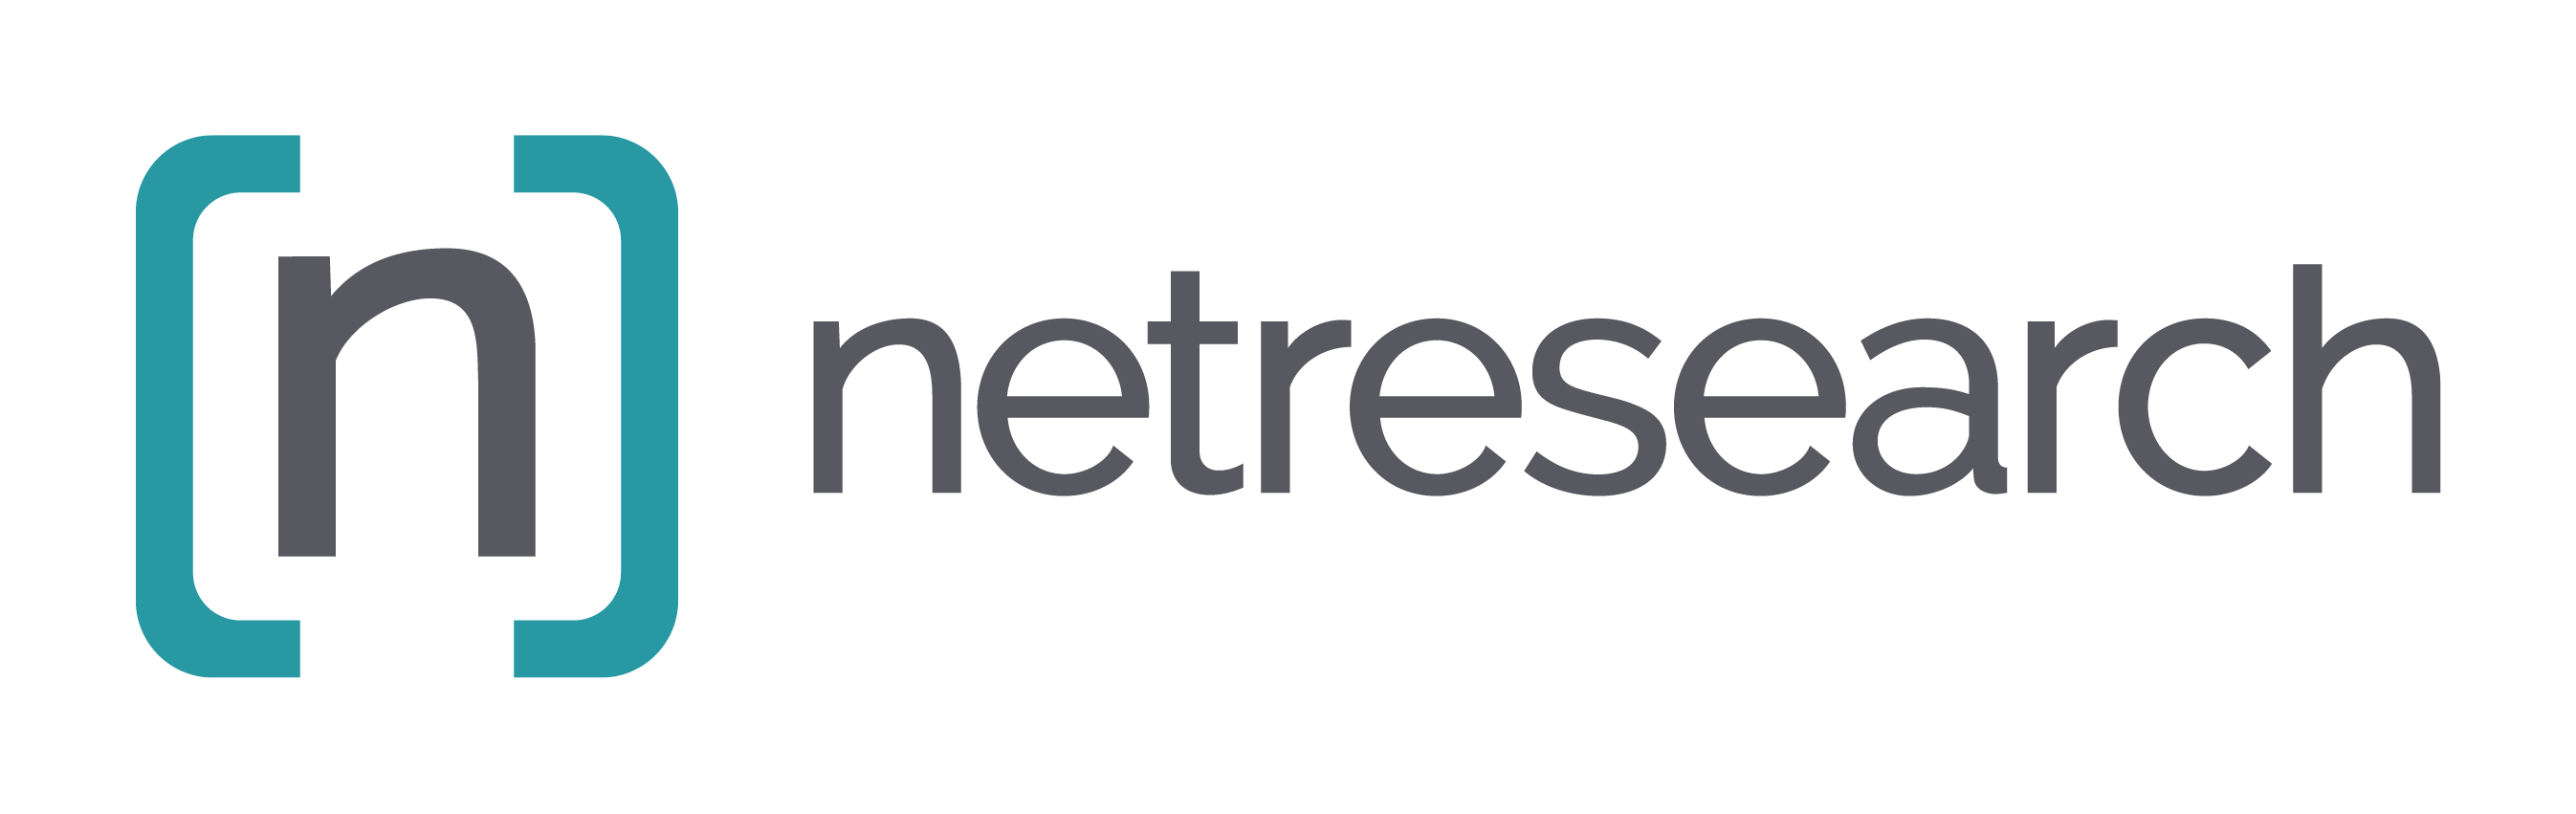 Netresearch Logo